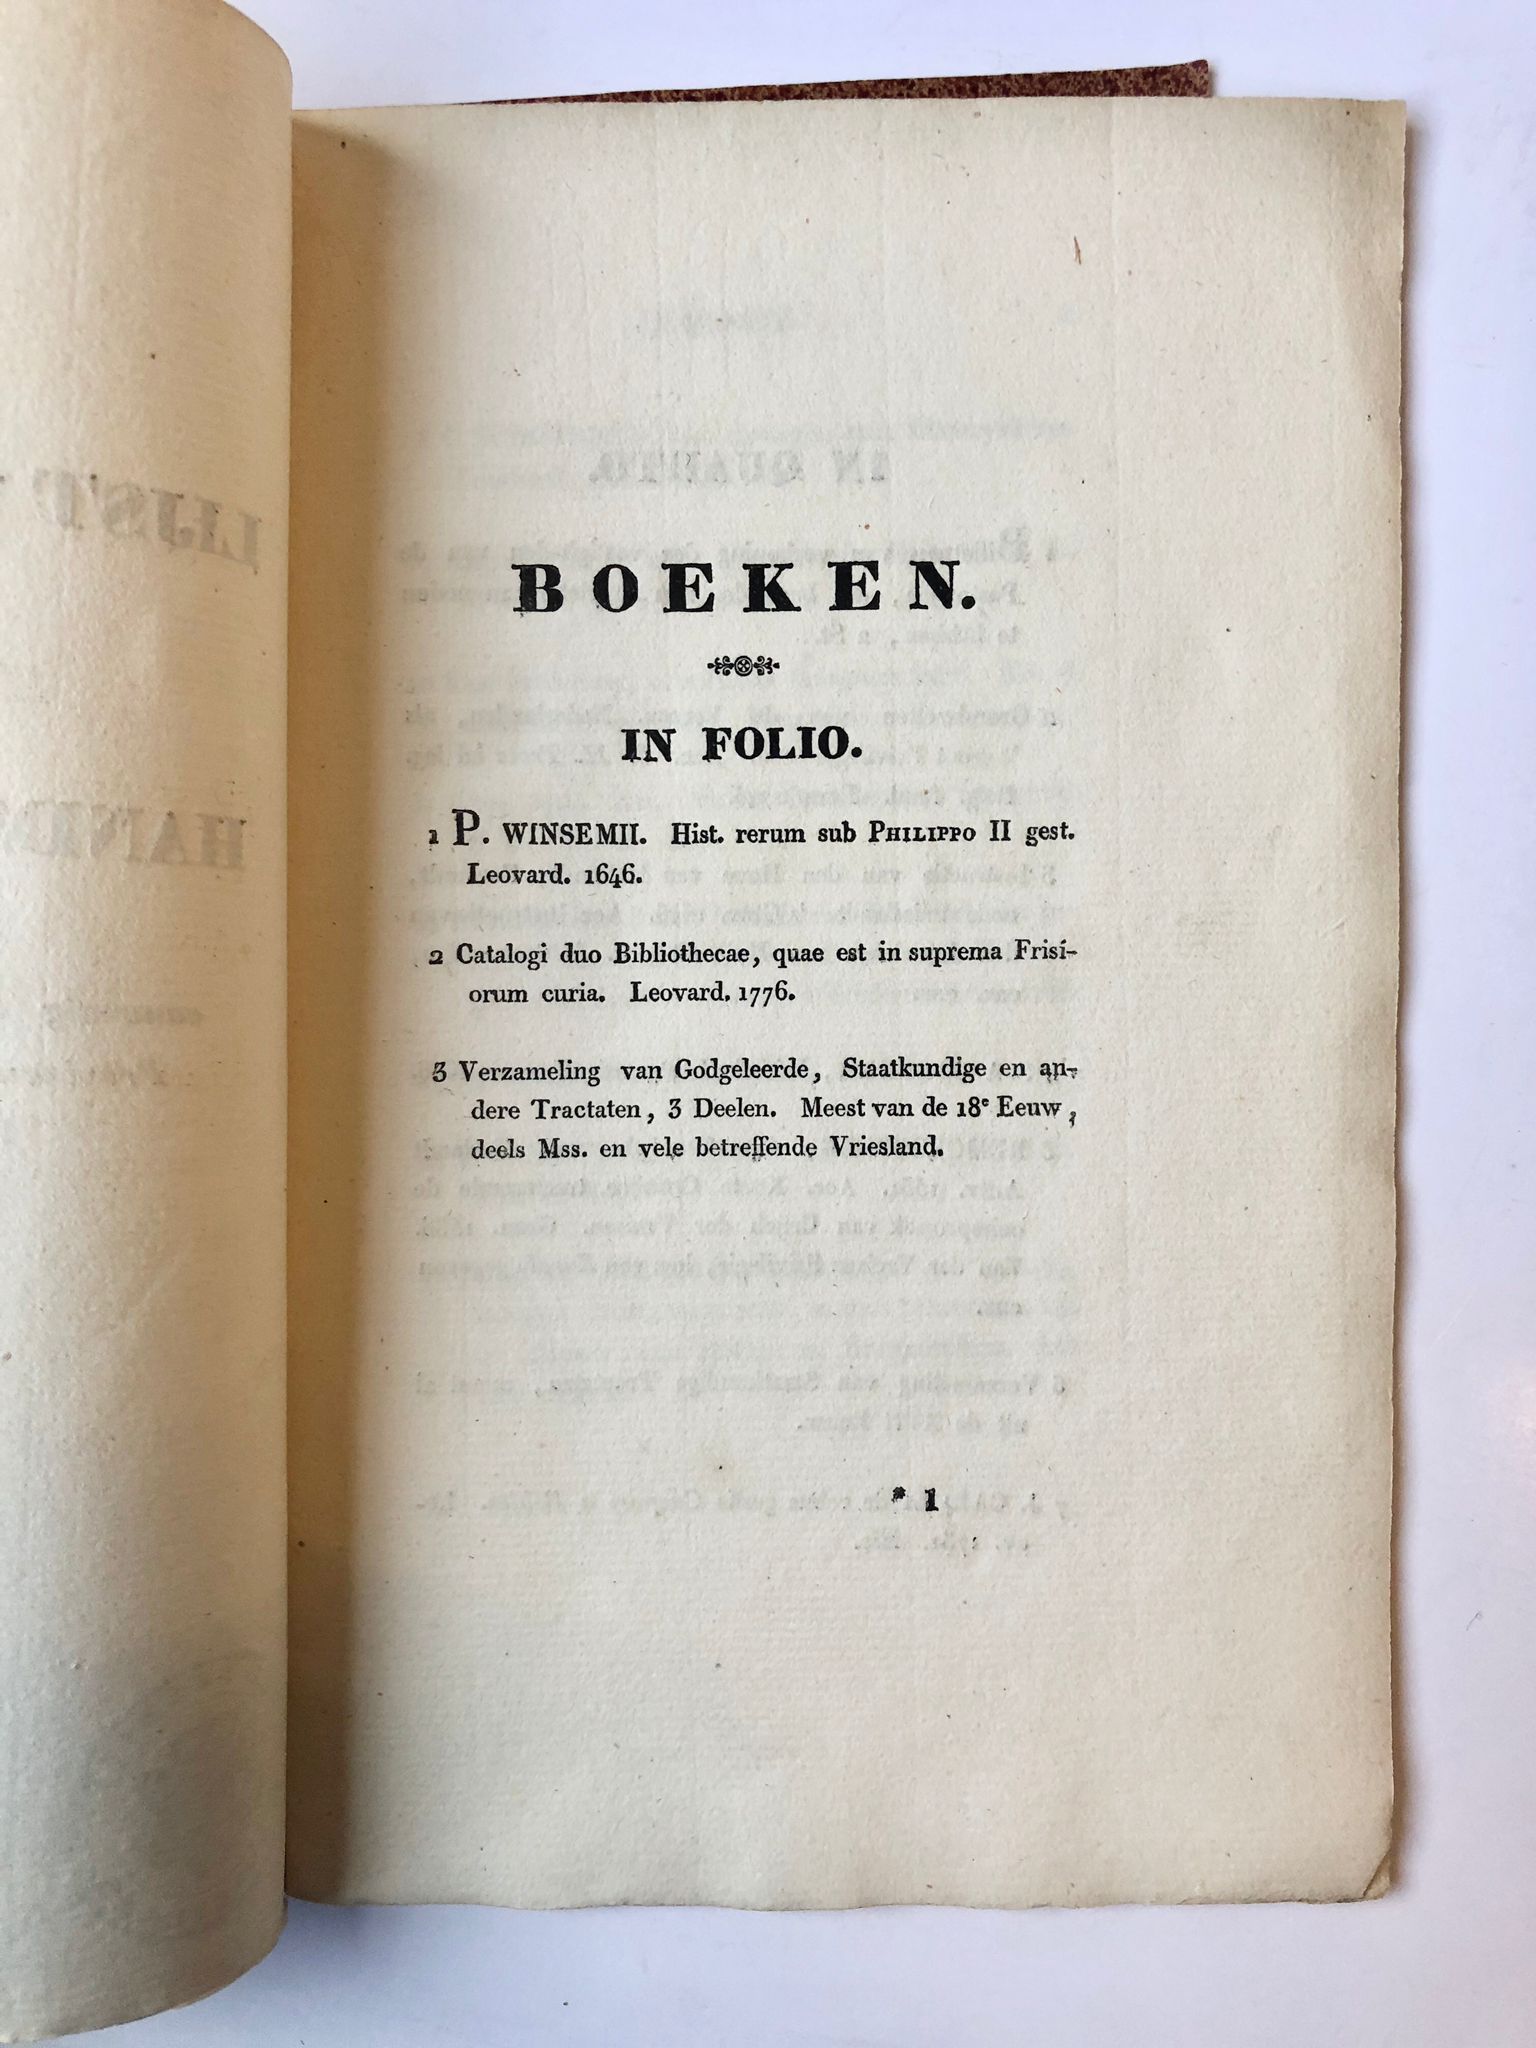 [Friesland, ca 1836] Lijst van boeken en handschriften aanwezig in het Archief van het Provinciaal Gouvernement van Vriesland, [Leeuwarden?, ca 1836], 15 pp.